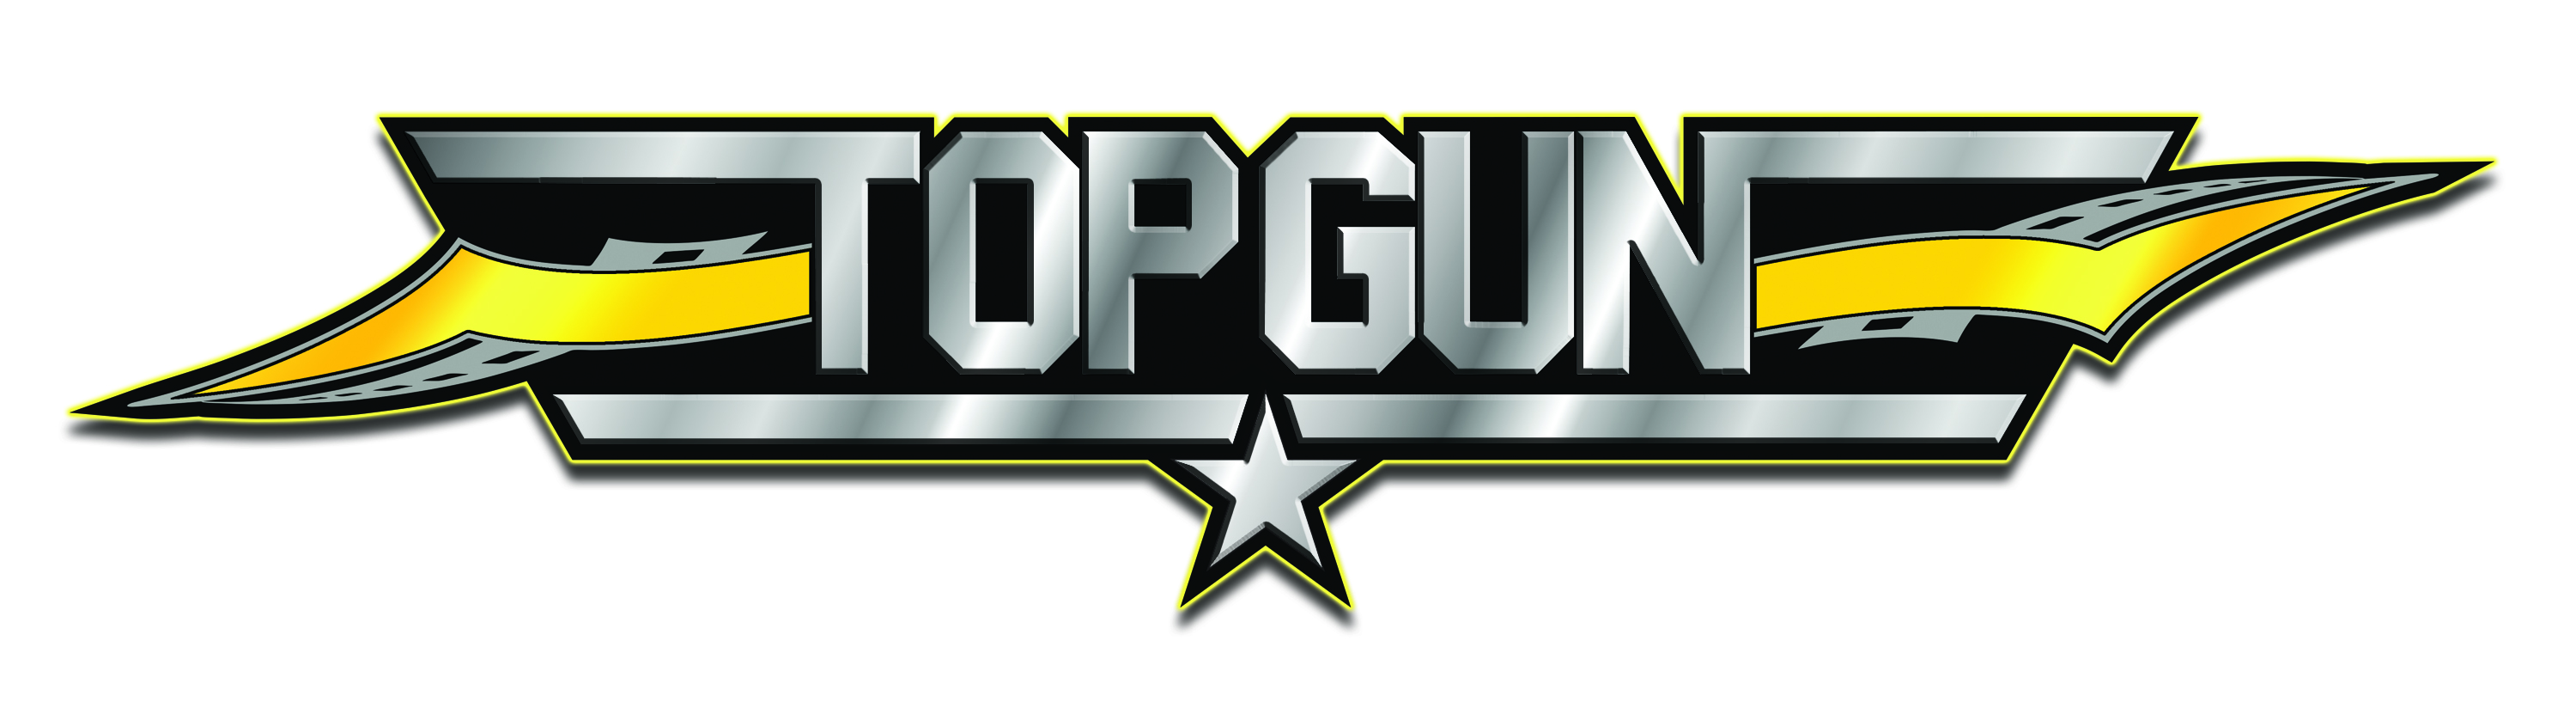 top gun allstars logo